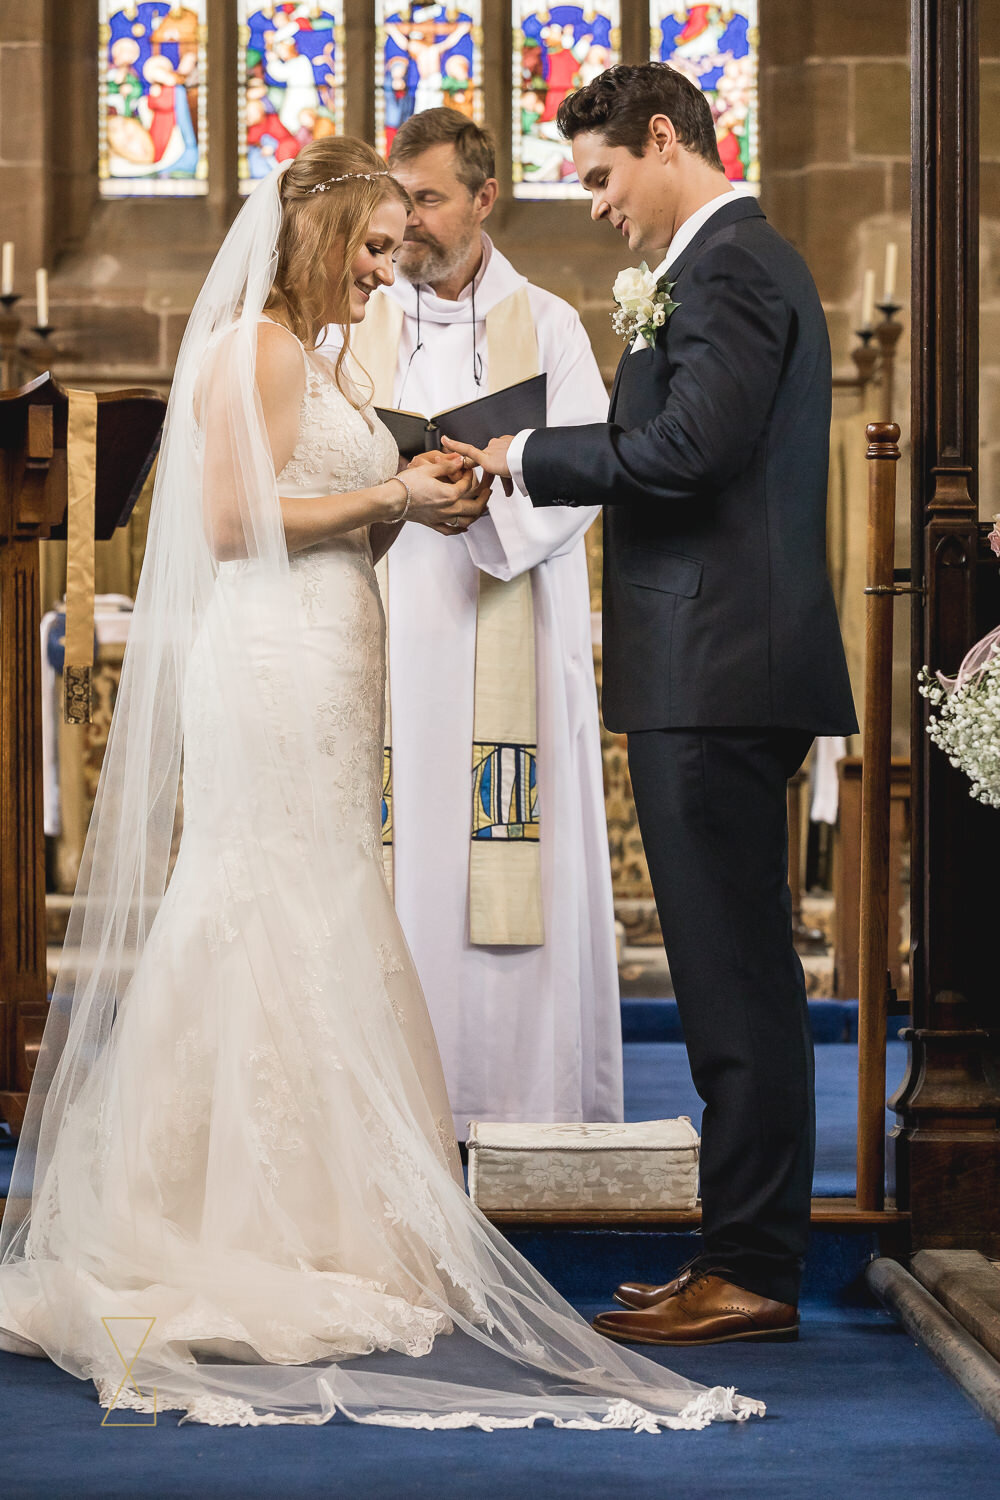 Exchanging-wedding-rings-Gawsworth-church-wedding